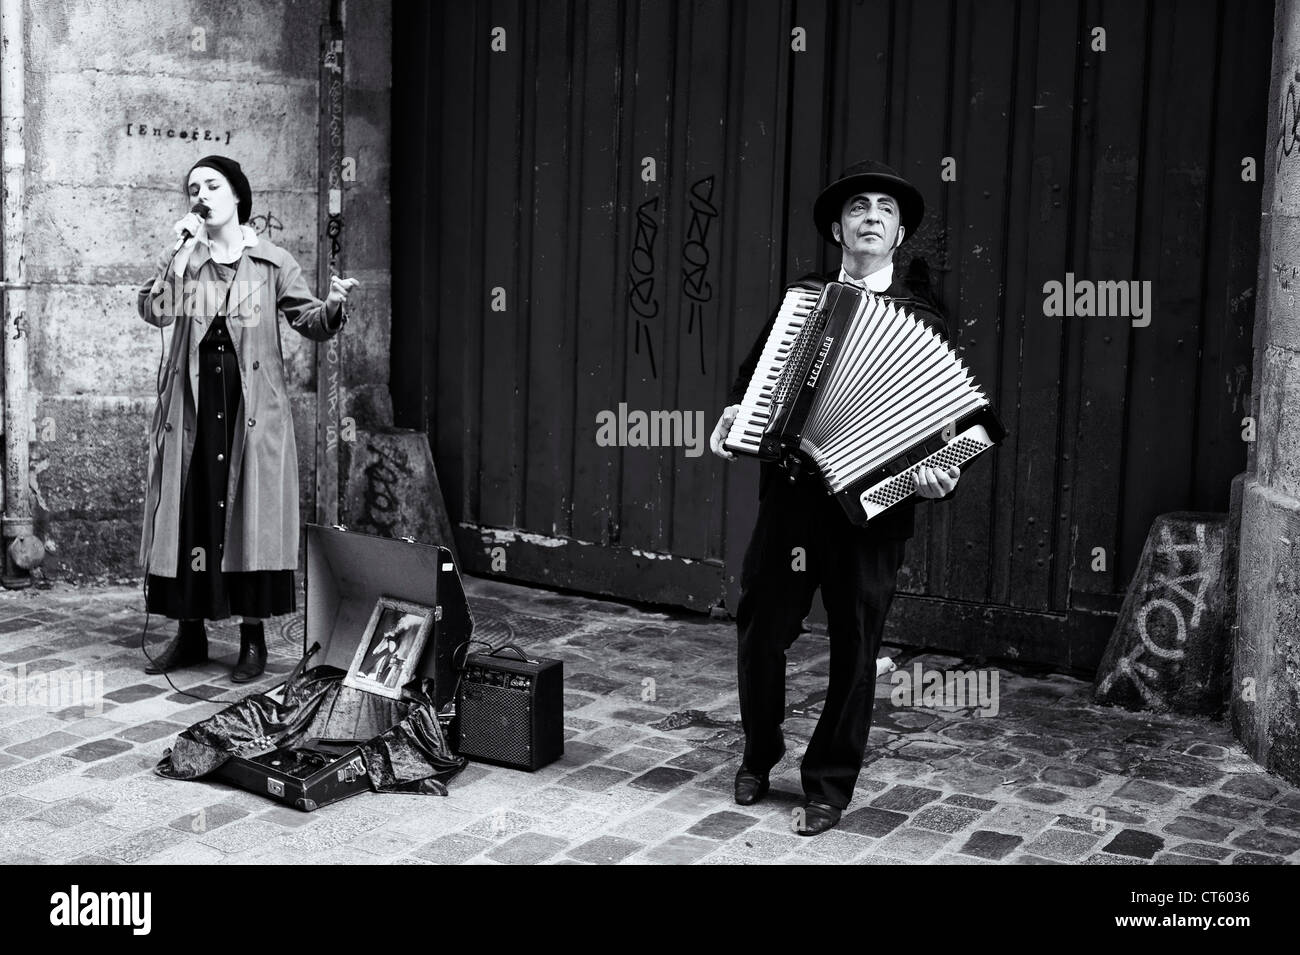 Paris - femme chantant et homme jouant de l'accordéon Banque D'Images